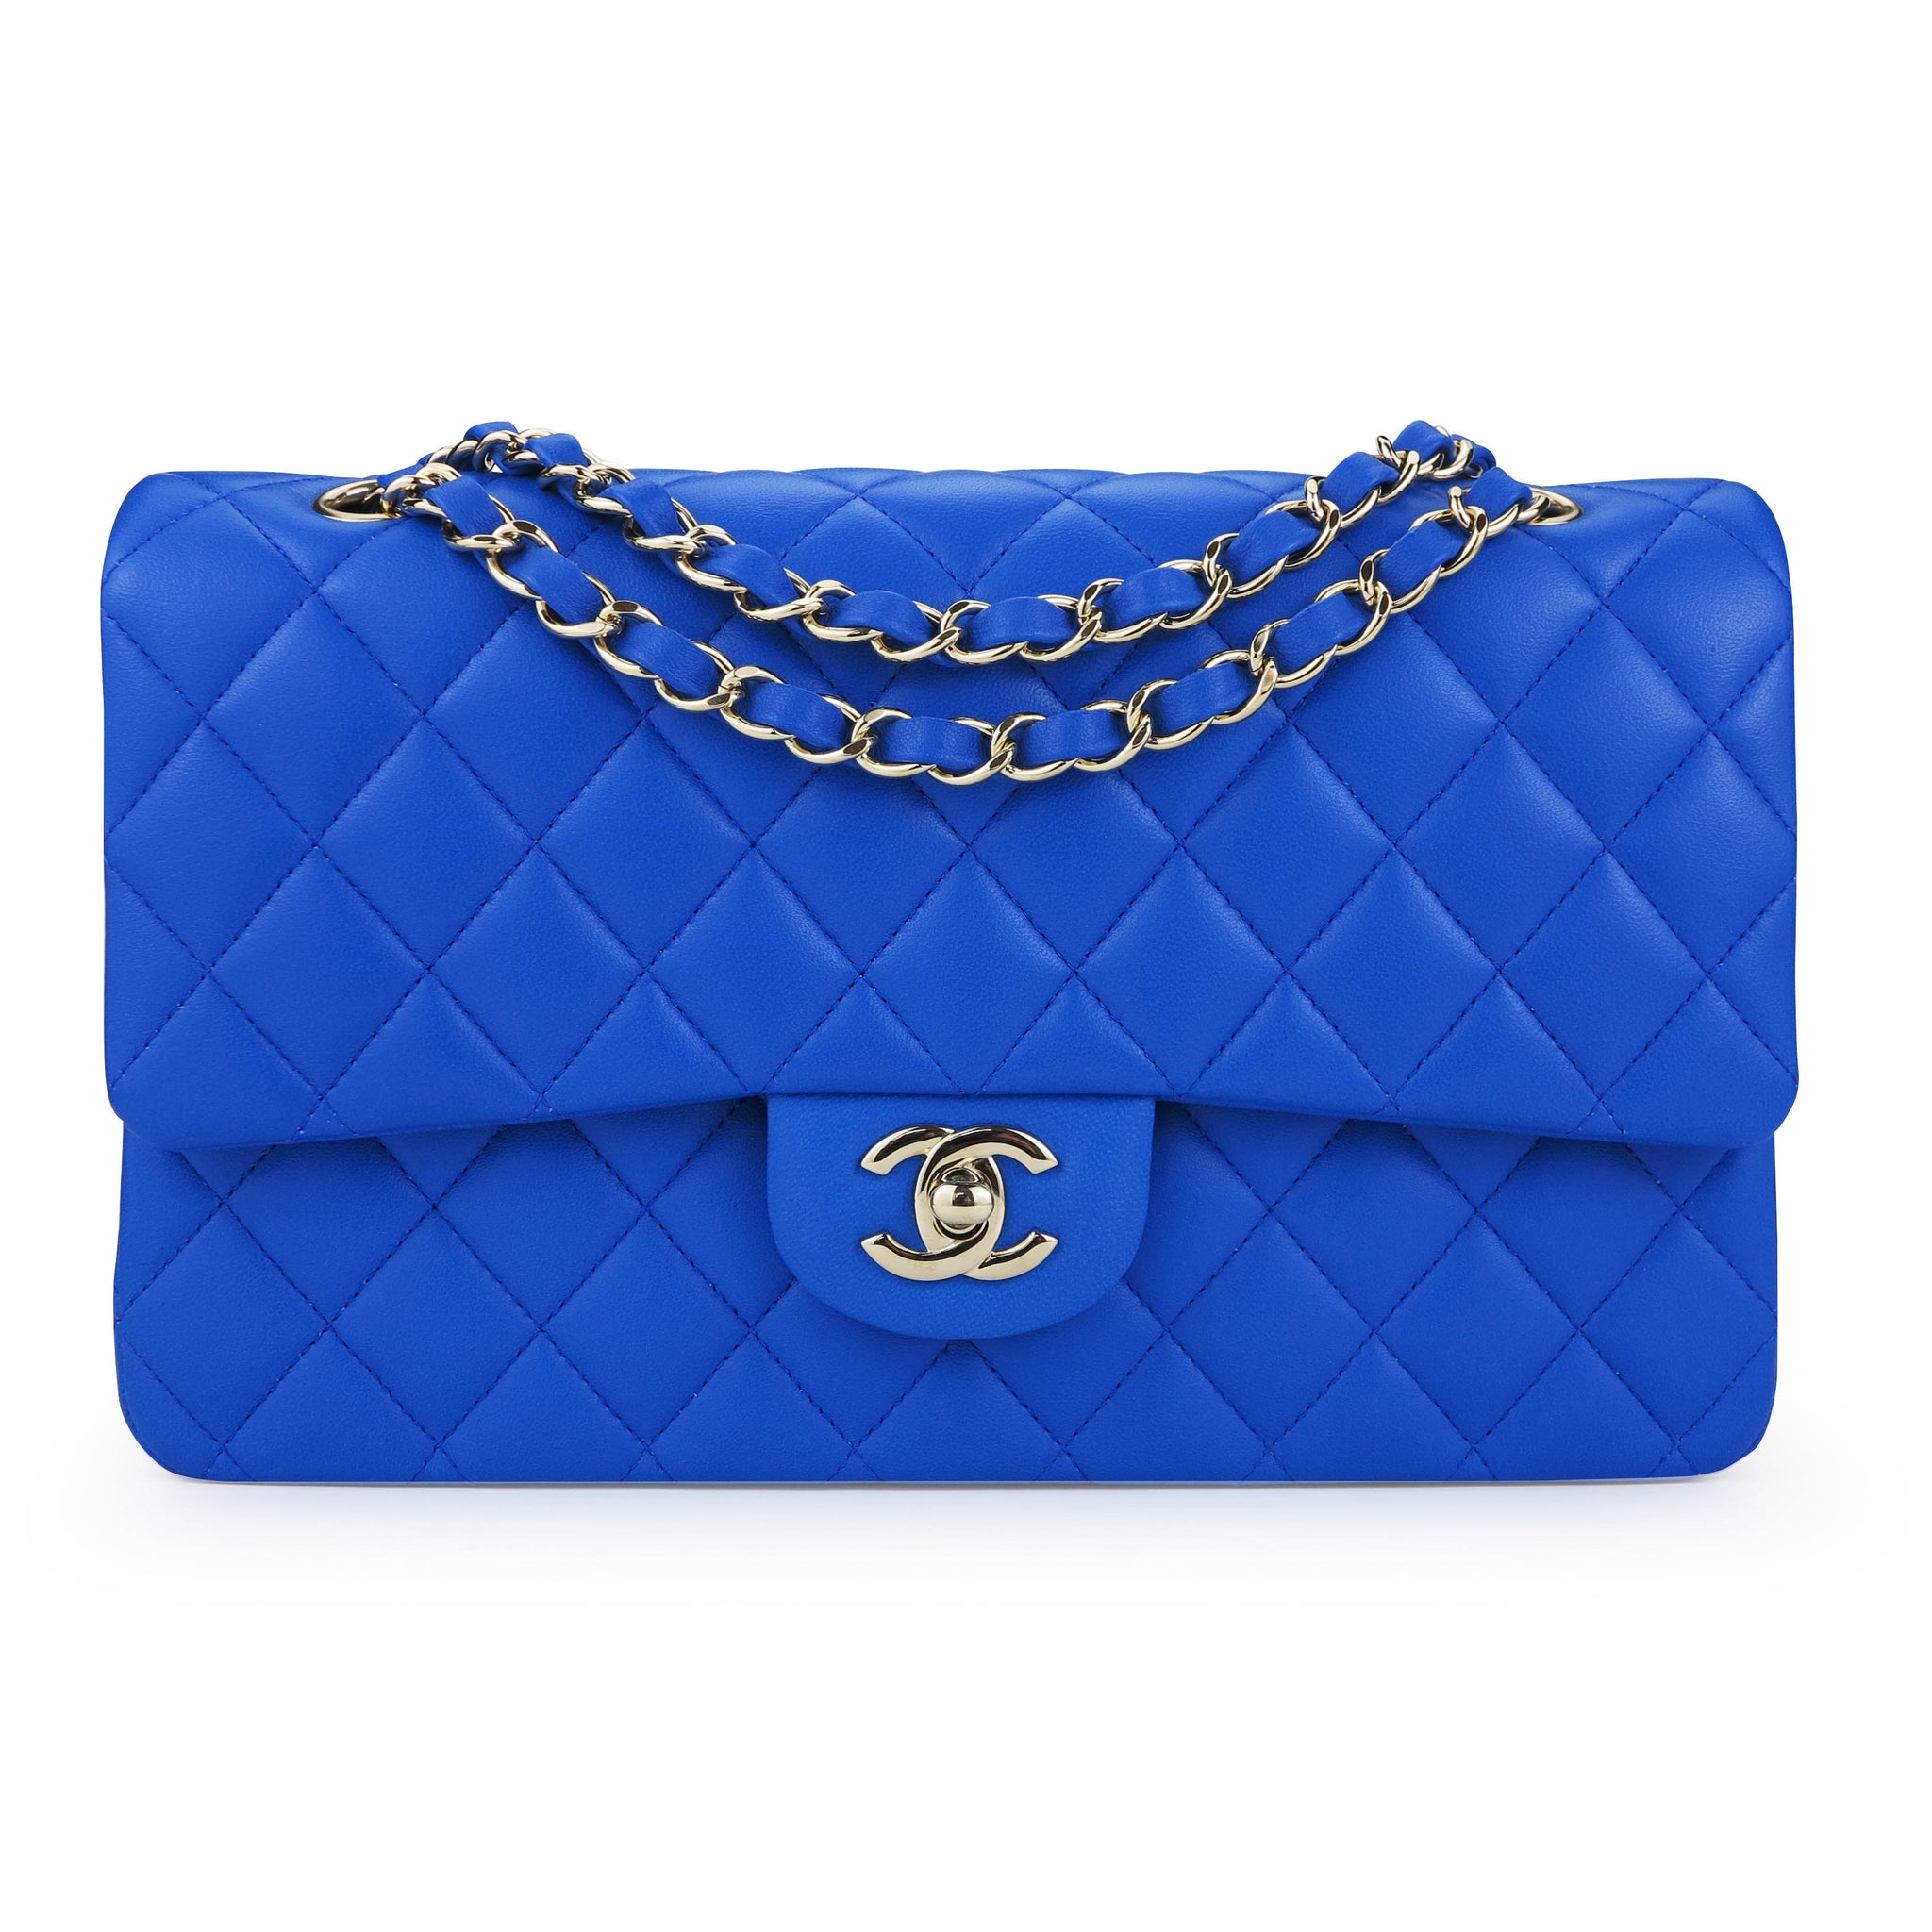 Chanel Tote Bag in Navy Blue Lambskin RHW  Luxury Helsinki